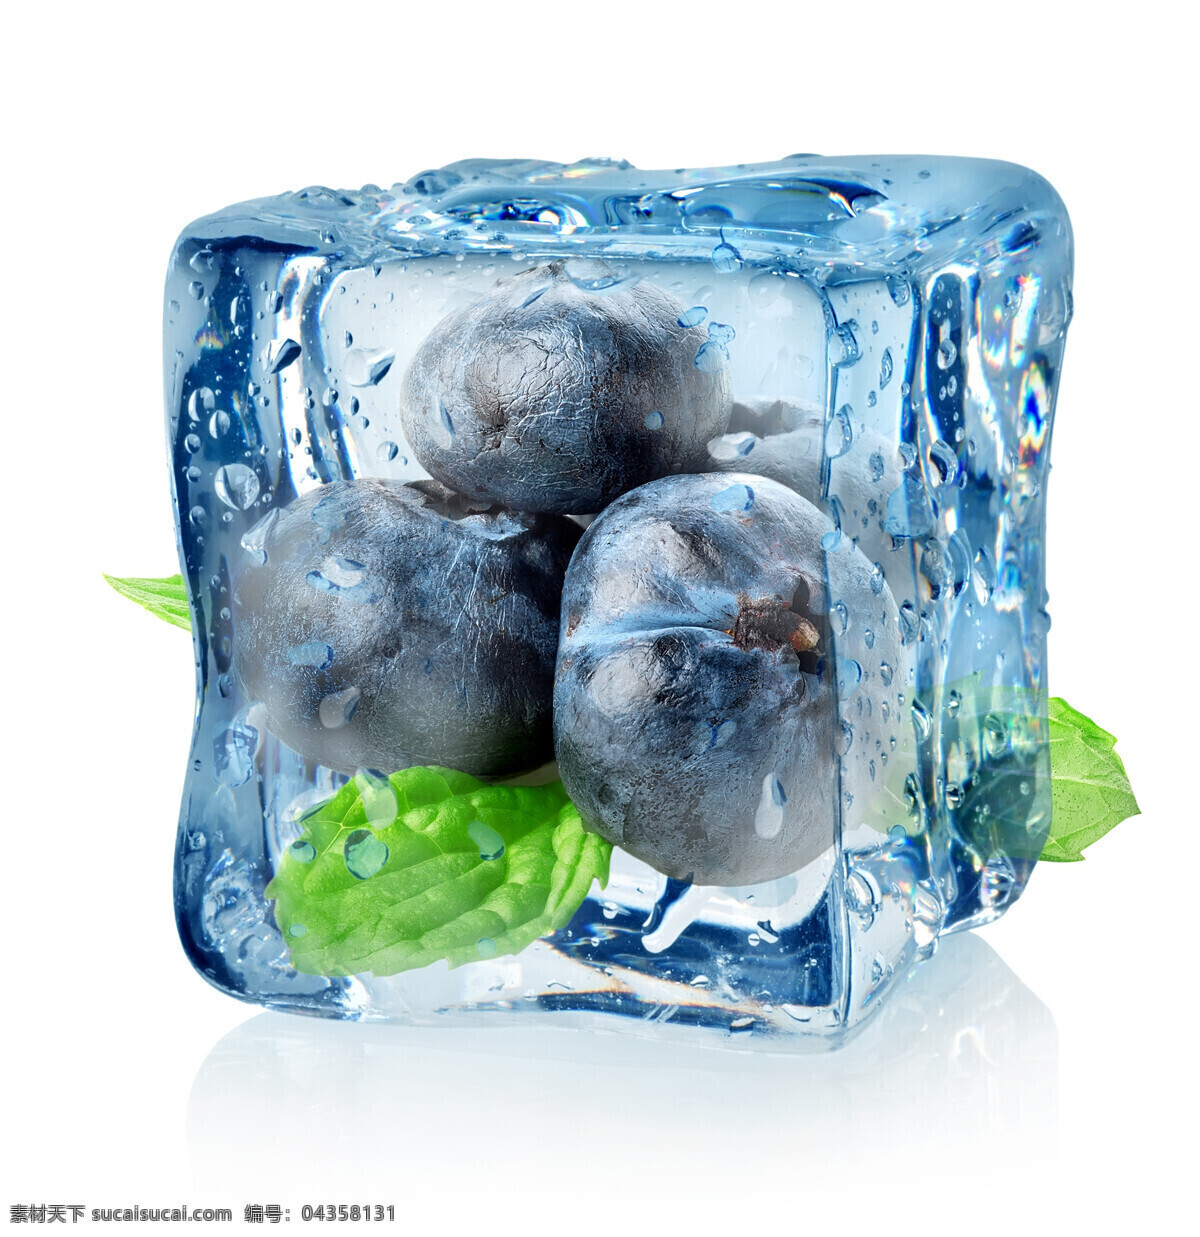 冰块 里 无花果 蓝色冰块 透明 水果 食物 美味 水果蔬菜 餐饮美食 白色